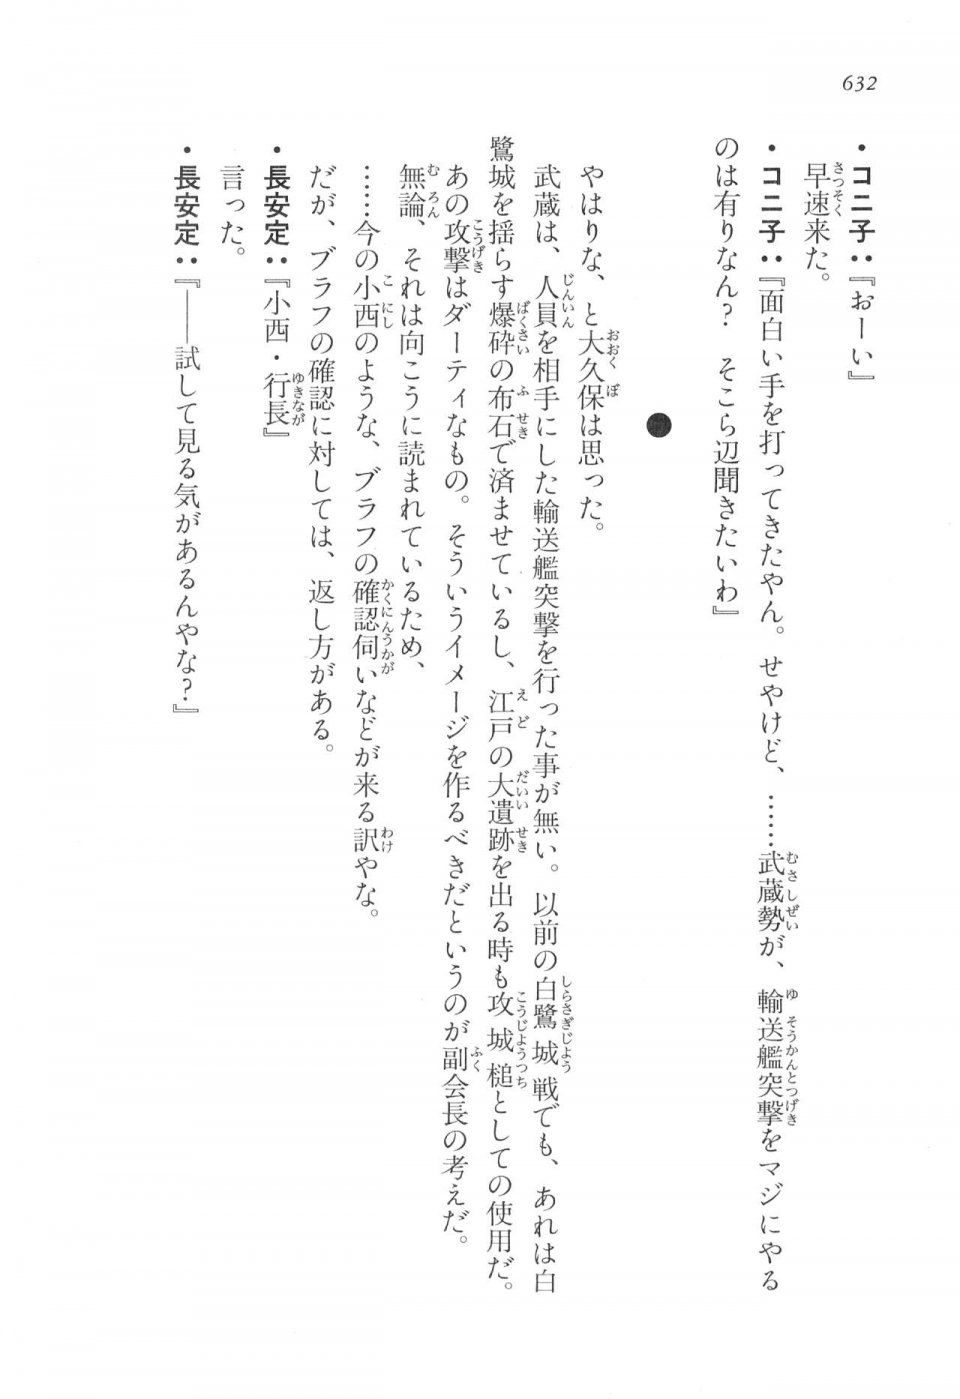 Kyoukai Senjou no Horizon LN Vol 17(7B) - Photo #634